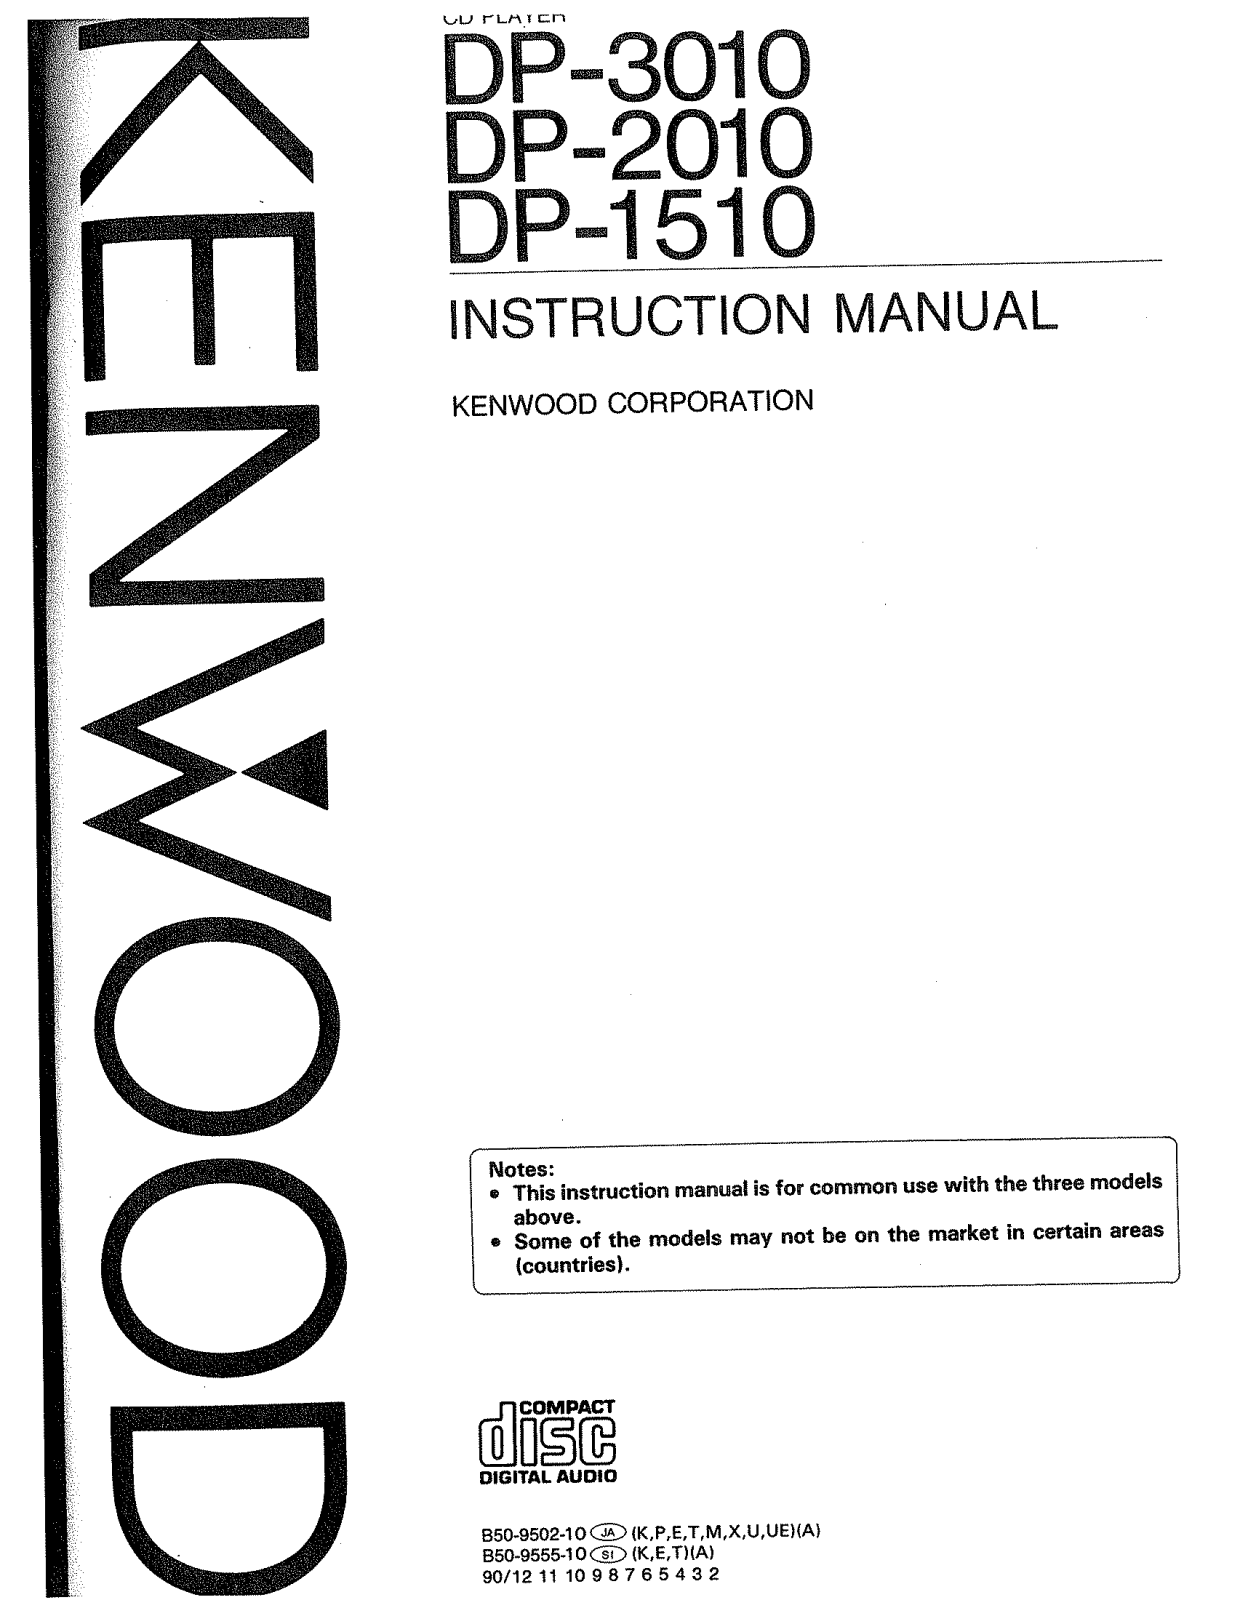 Kenwood DP-3010, DP-2010, DP-1510 Owner's Manual